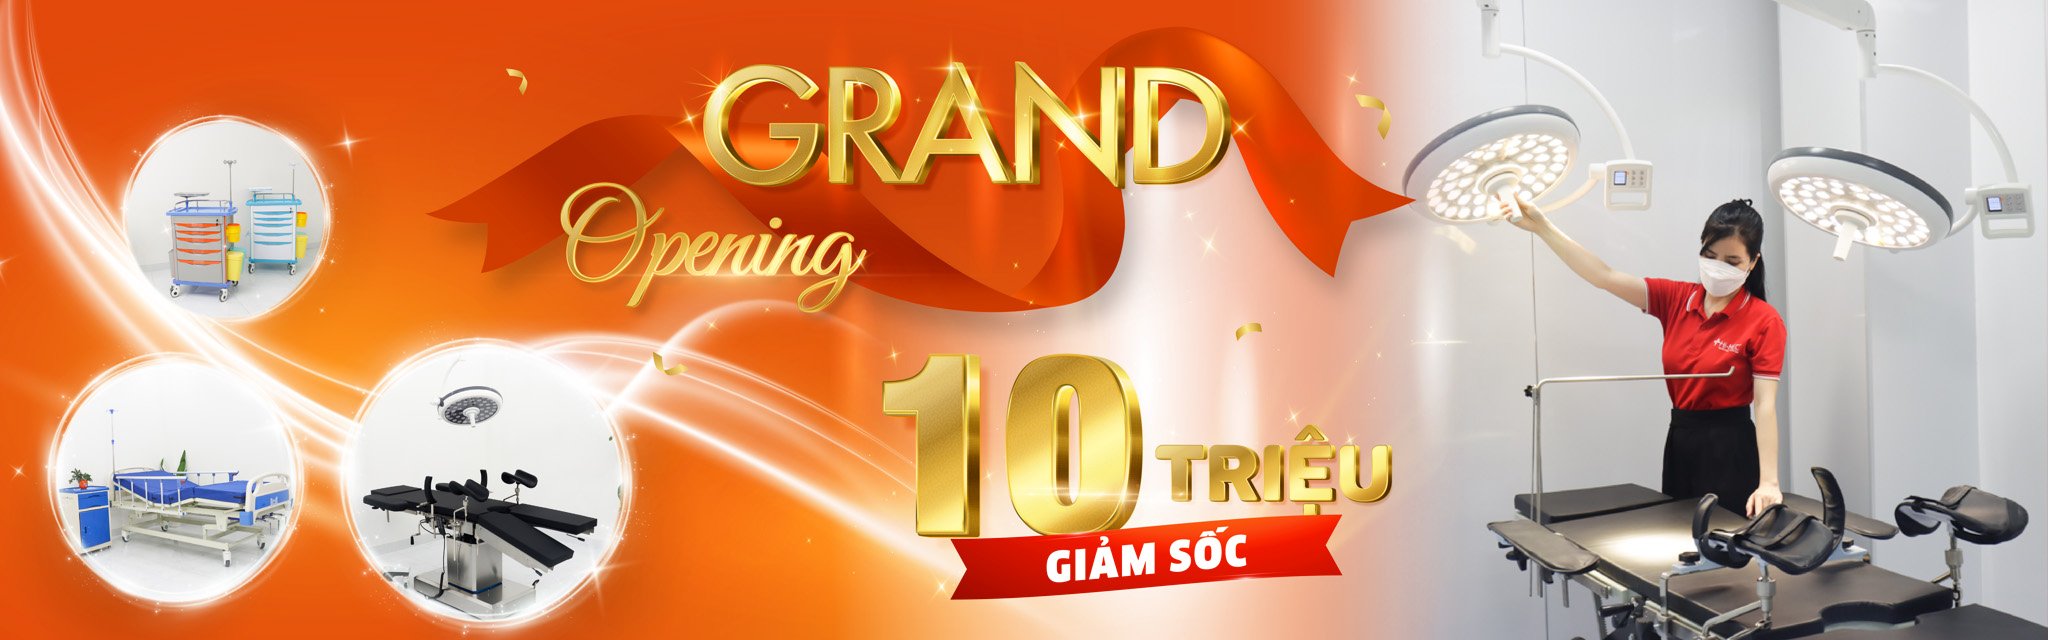 Grand Opening - Giảm Ngay 10 Triệu (Chi Nhánh Hà Nội)